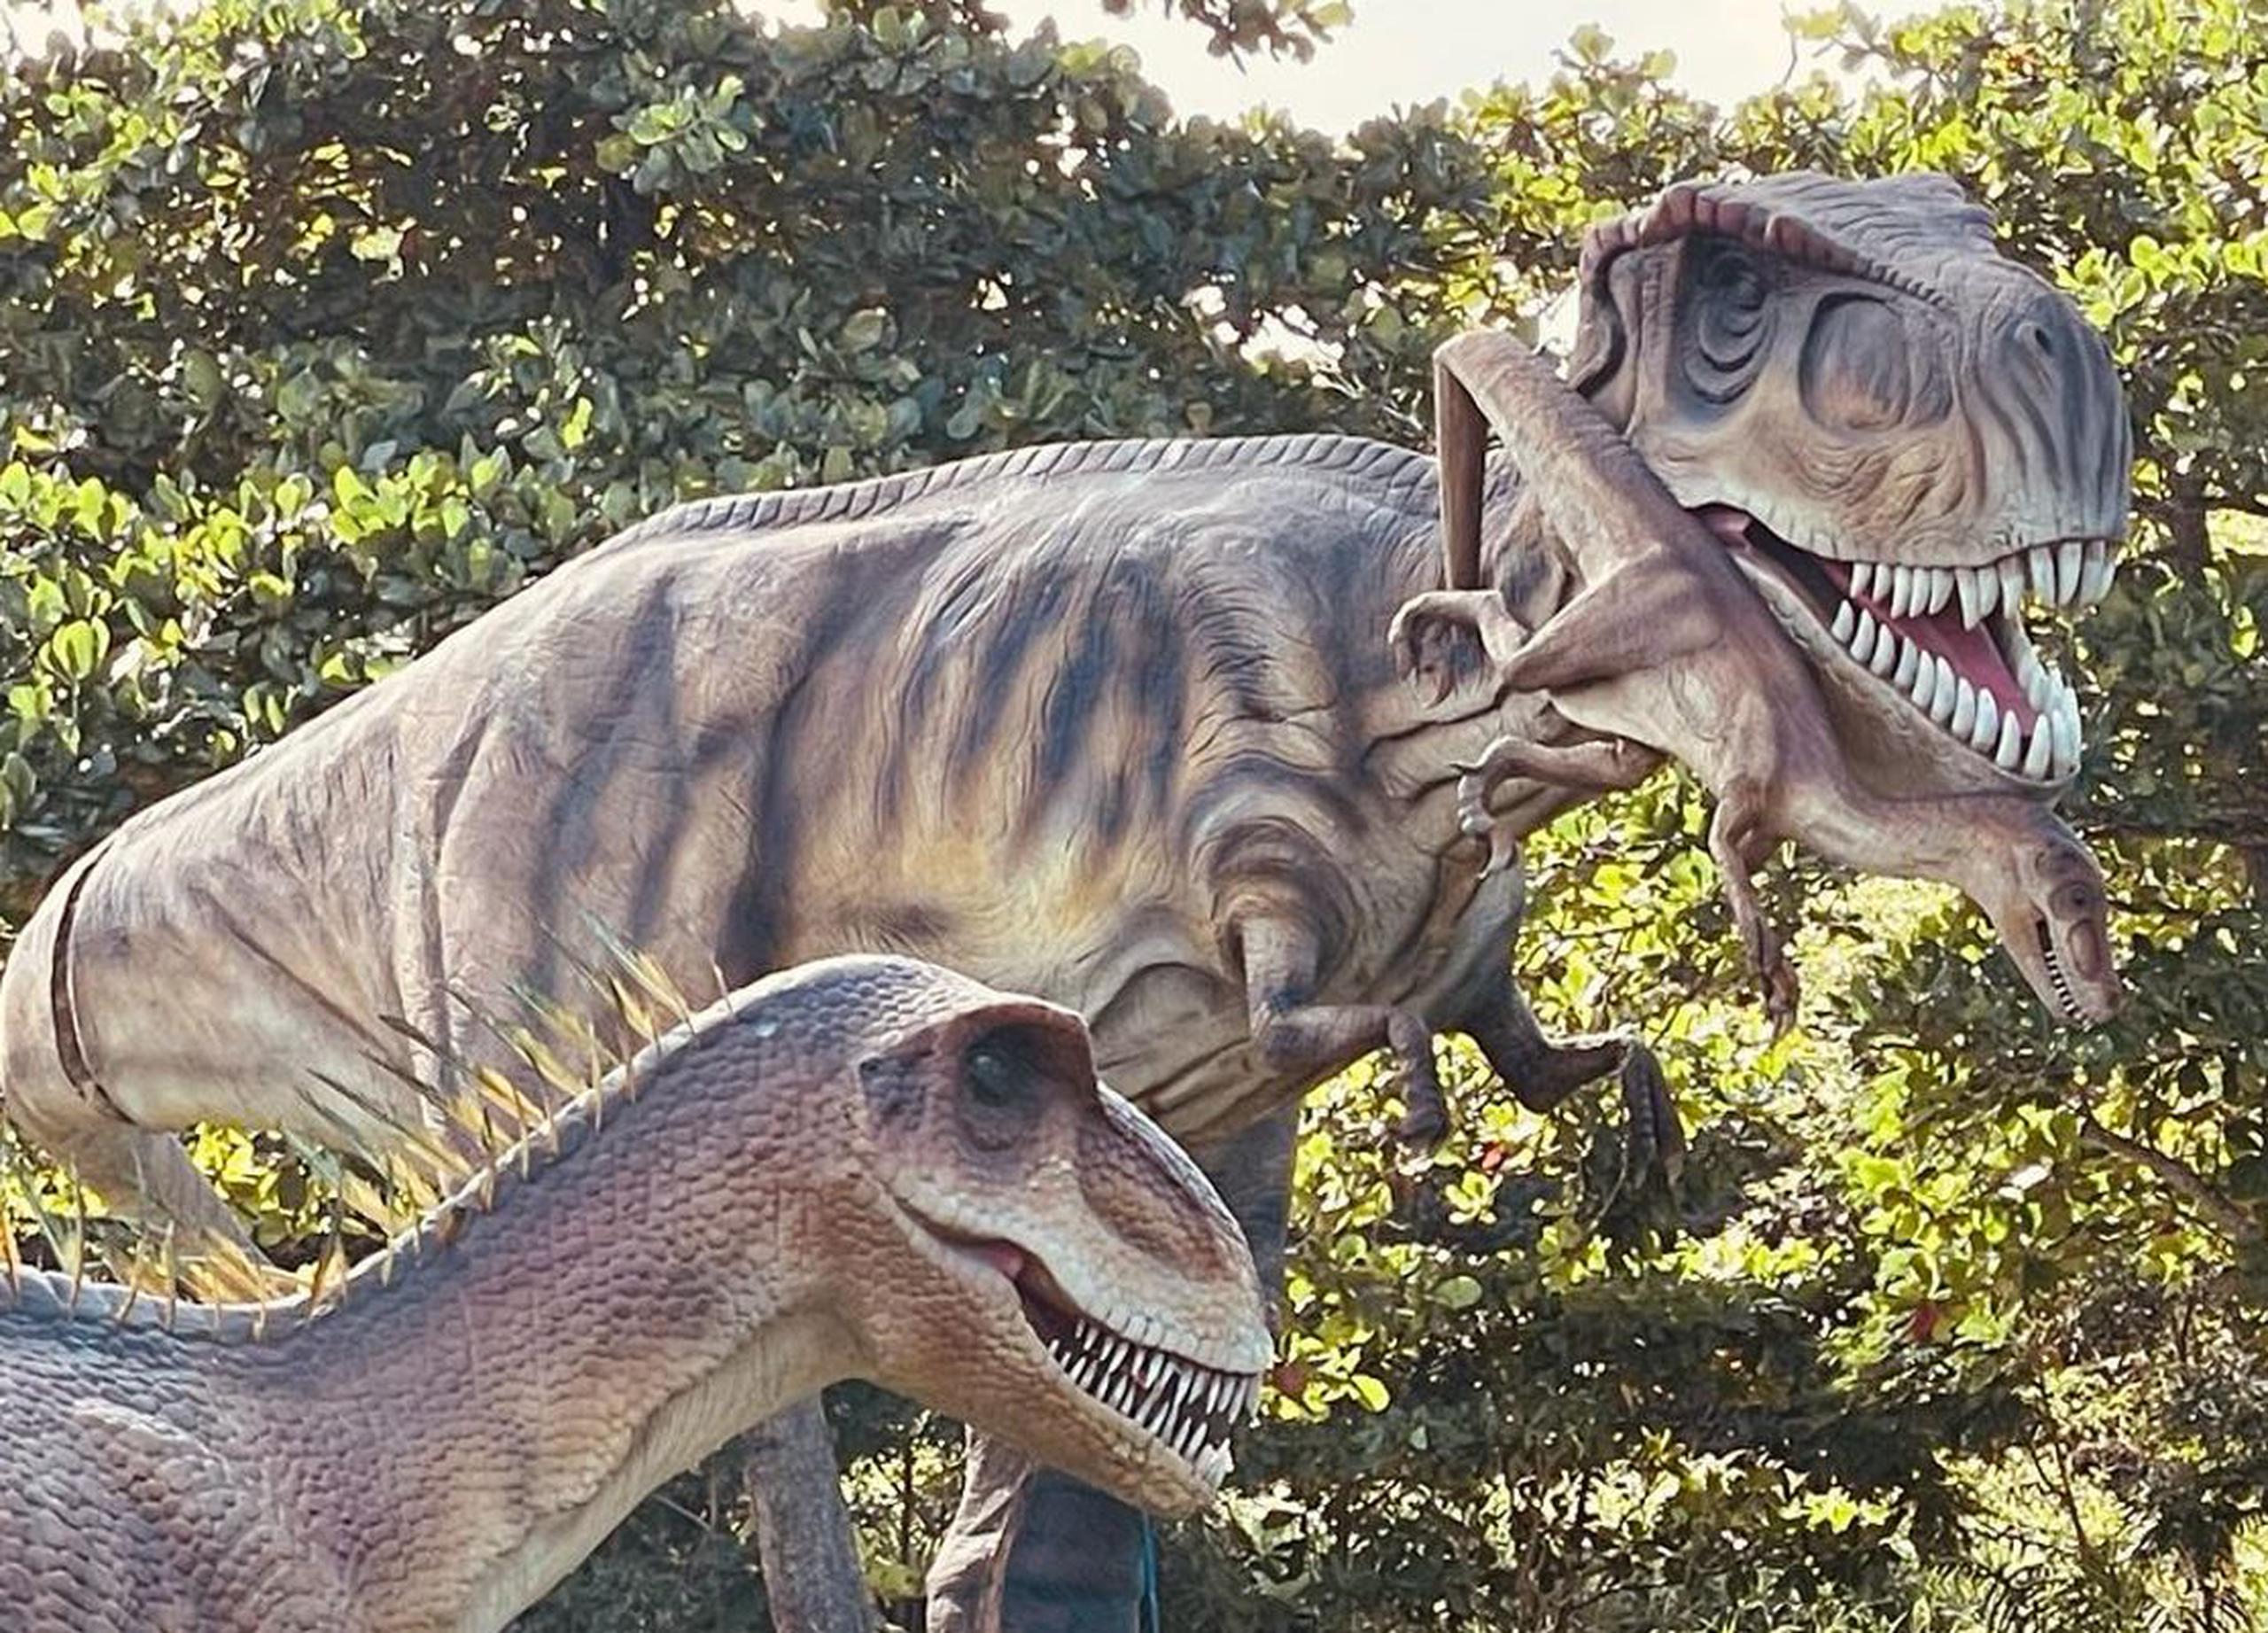 Dinosaurs Animatronics continua en el Parque Luis Muñoz Marín, con más de 40 especímenes con movimiento y a escala real.